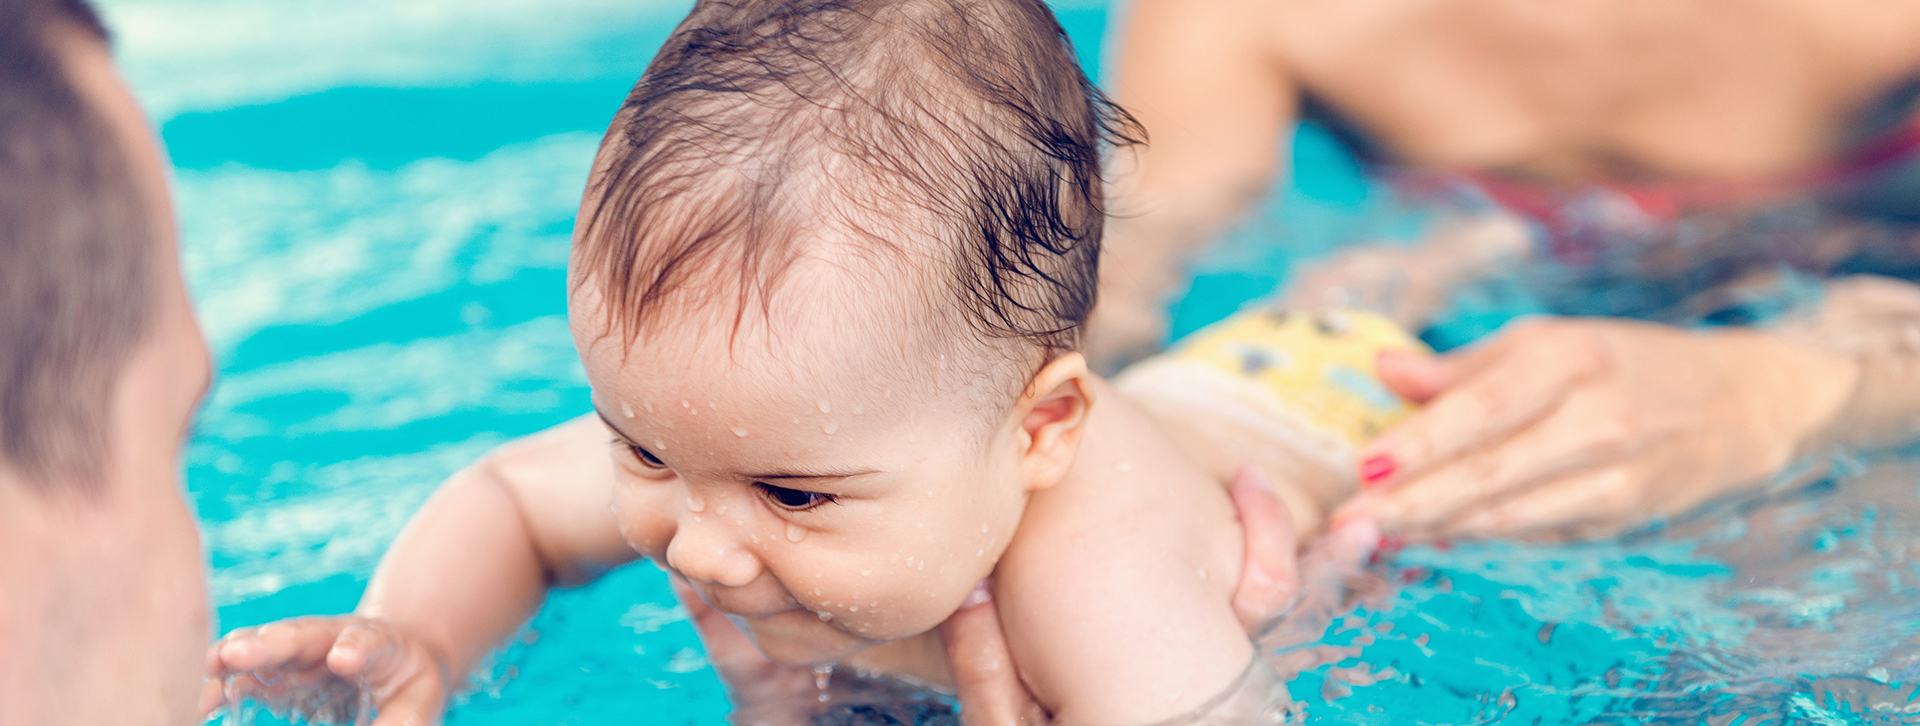 חוג שחייה לתינוקות - מתוק ומצמיח